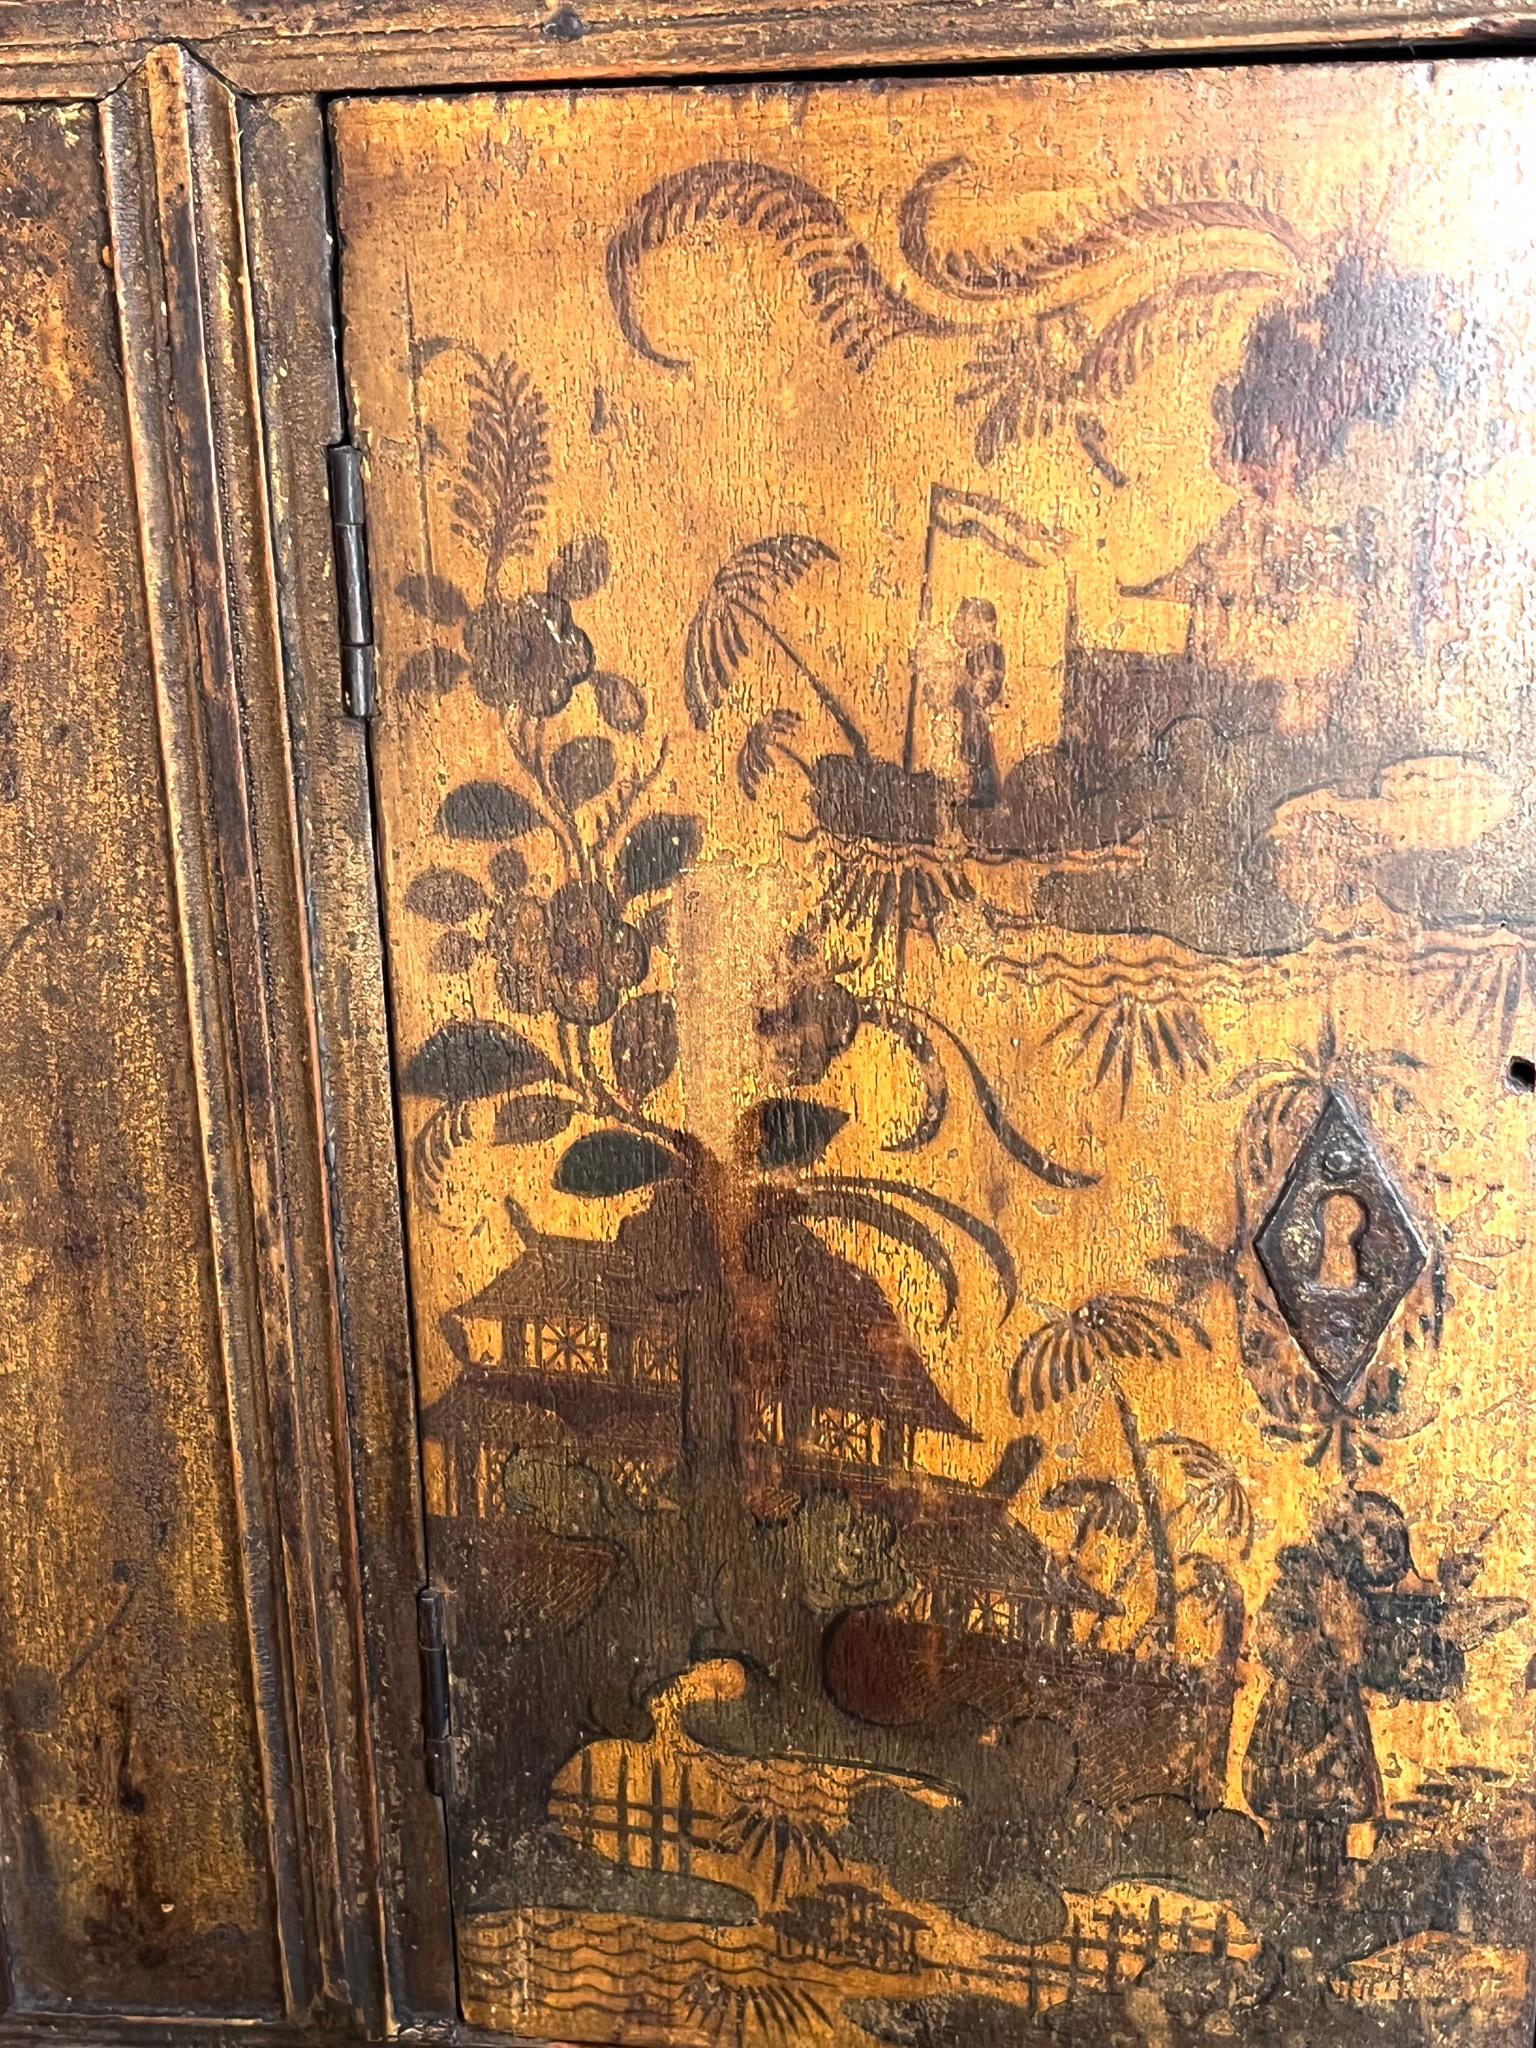 Französisch Regal ( région de Aix en Provence ) 18 Jahrhundert, Decor Chinois auf einem gelben Hintergrund.
Zwei geschwungene Türen. Originalzustand keine Restaurierung.
Elegantes und raffiniertes Design.